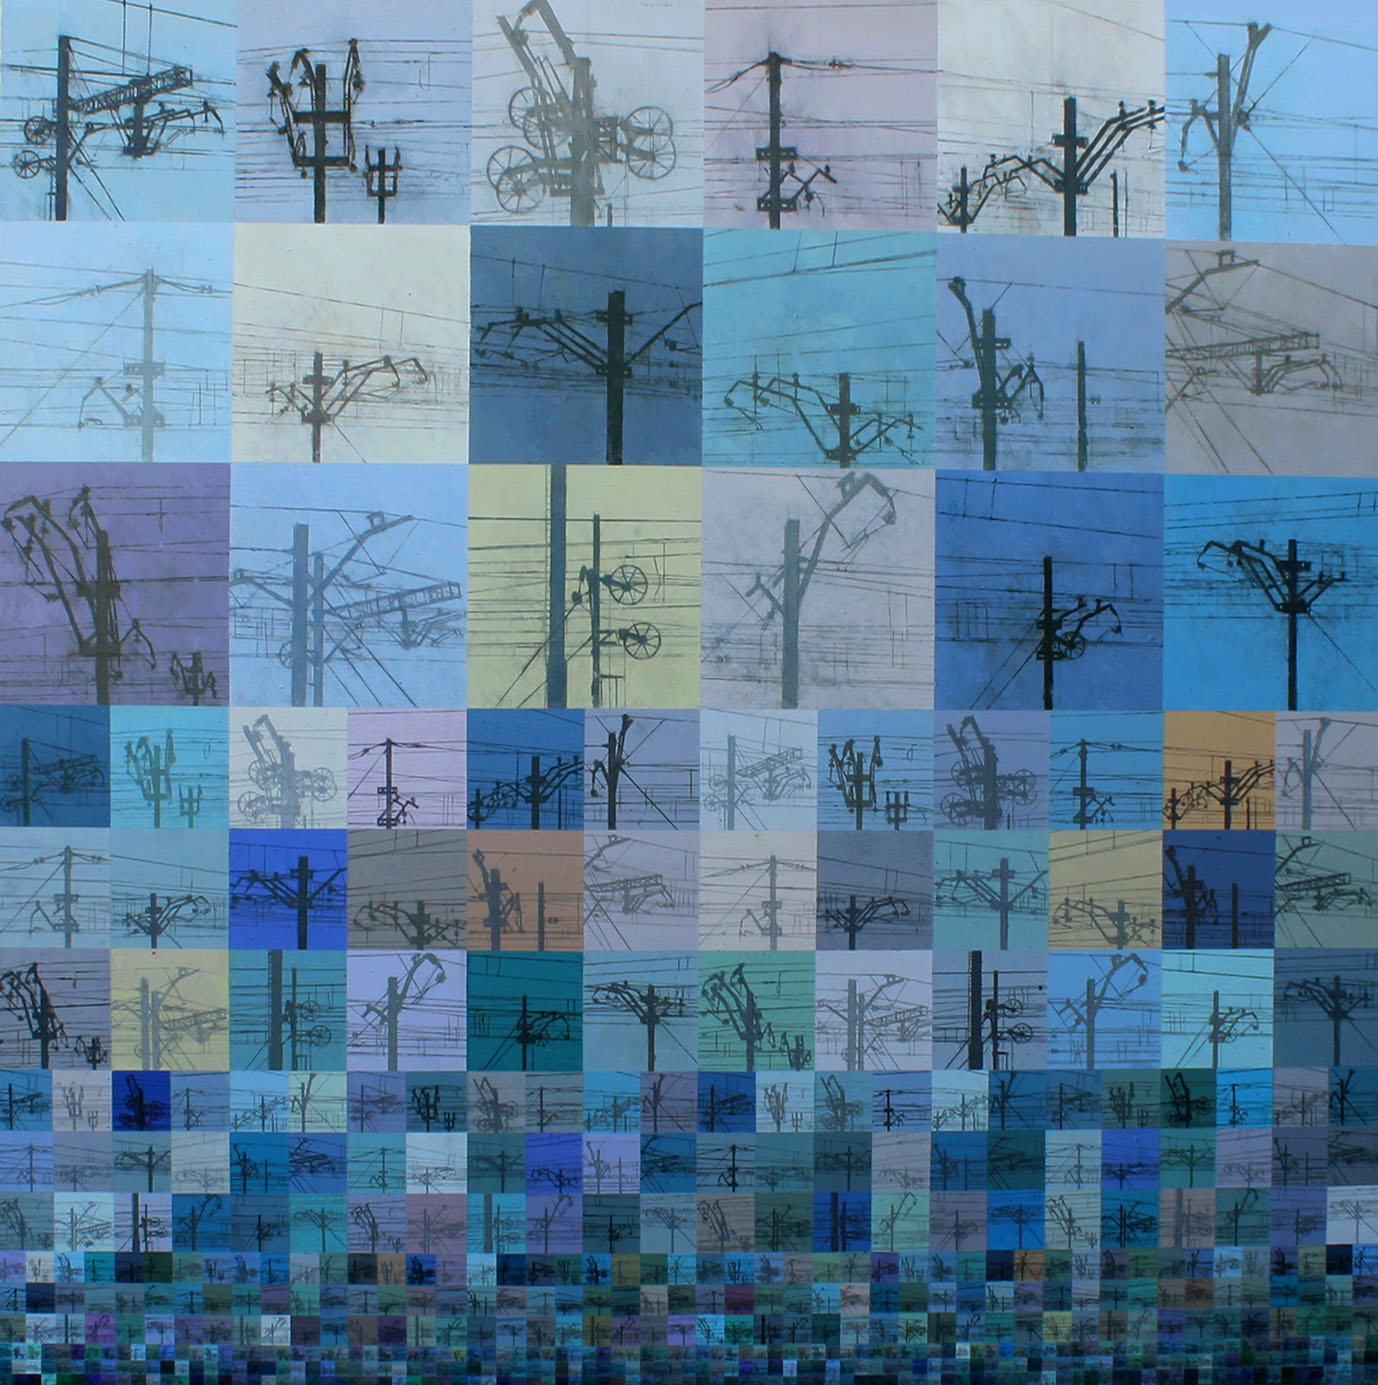 558 RETRATOS EN AZUL -UN HOMENAJE A BERND & HILLA BECHER-, 2017. Acrílico y lápiz sobre tabla. 150×150 cm. Segundo premio  IX Certamen de pintura Laura Otero.